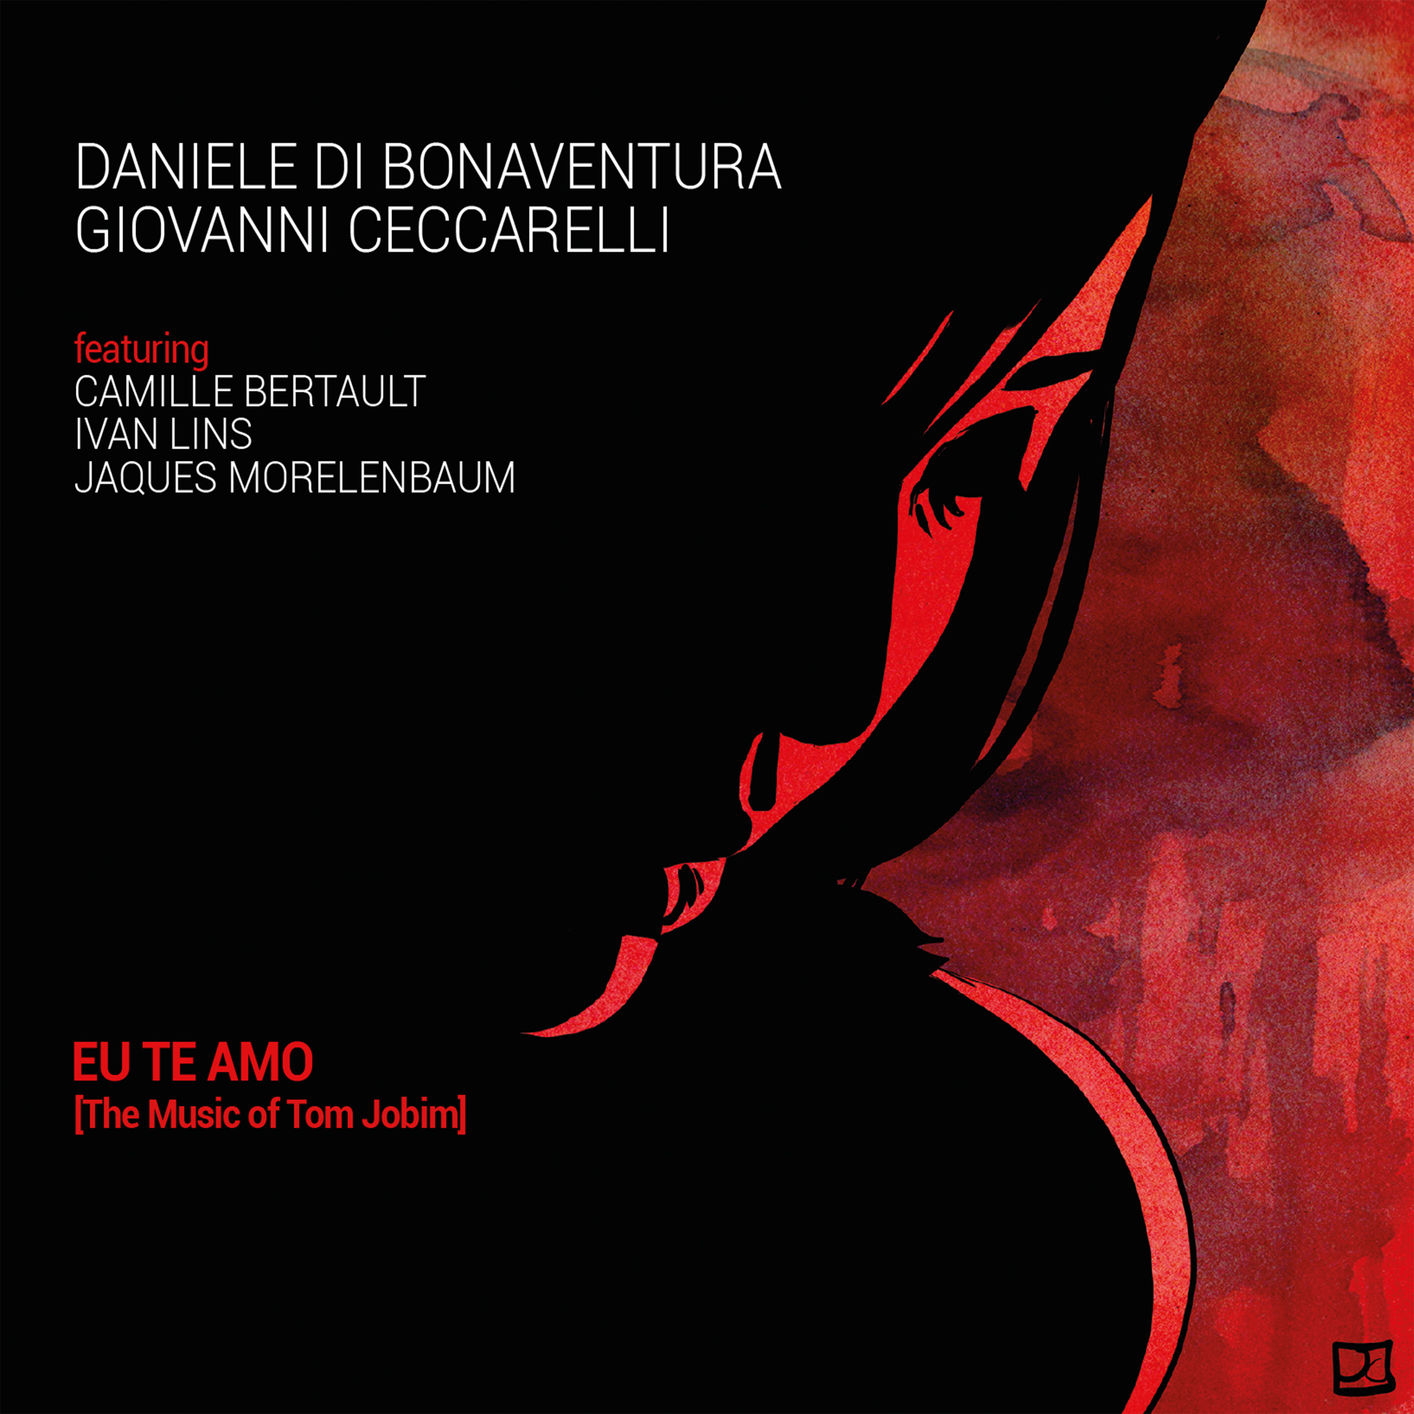 Daniele di Bonaventura & Giovanni Ceccarelli – Eu te amo (The Music of Tom Jobim) (2019) [FLAC 24bit/88,2kHz]